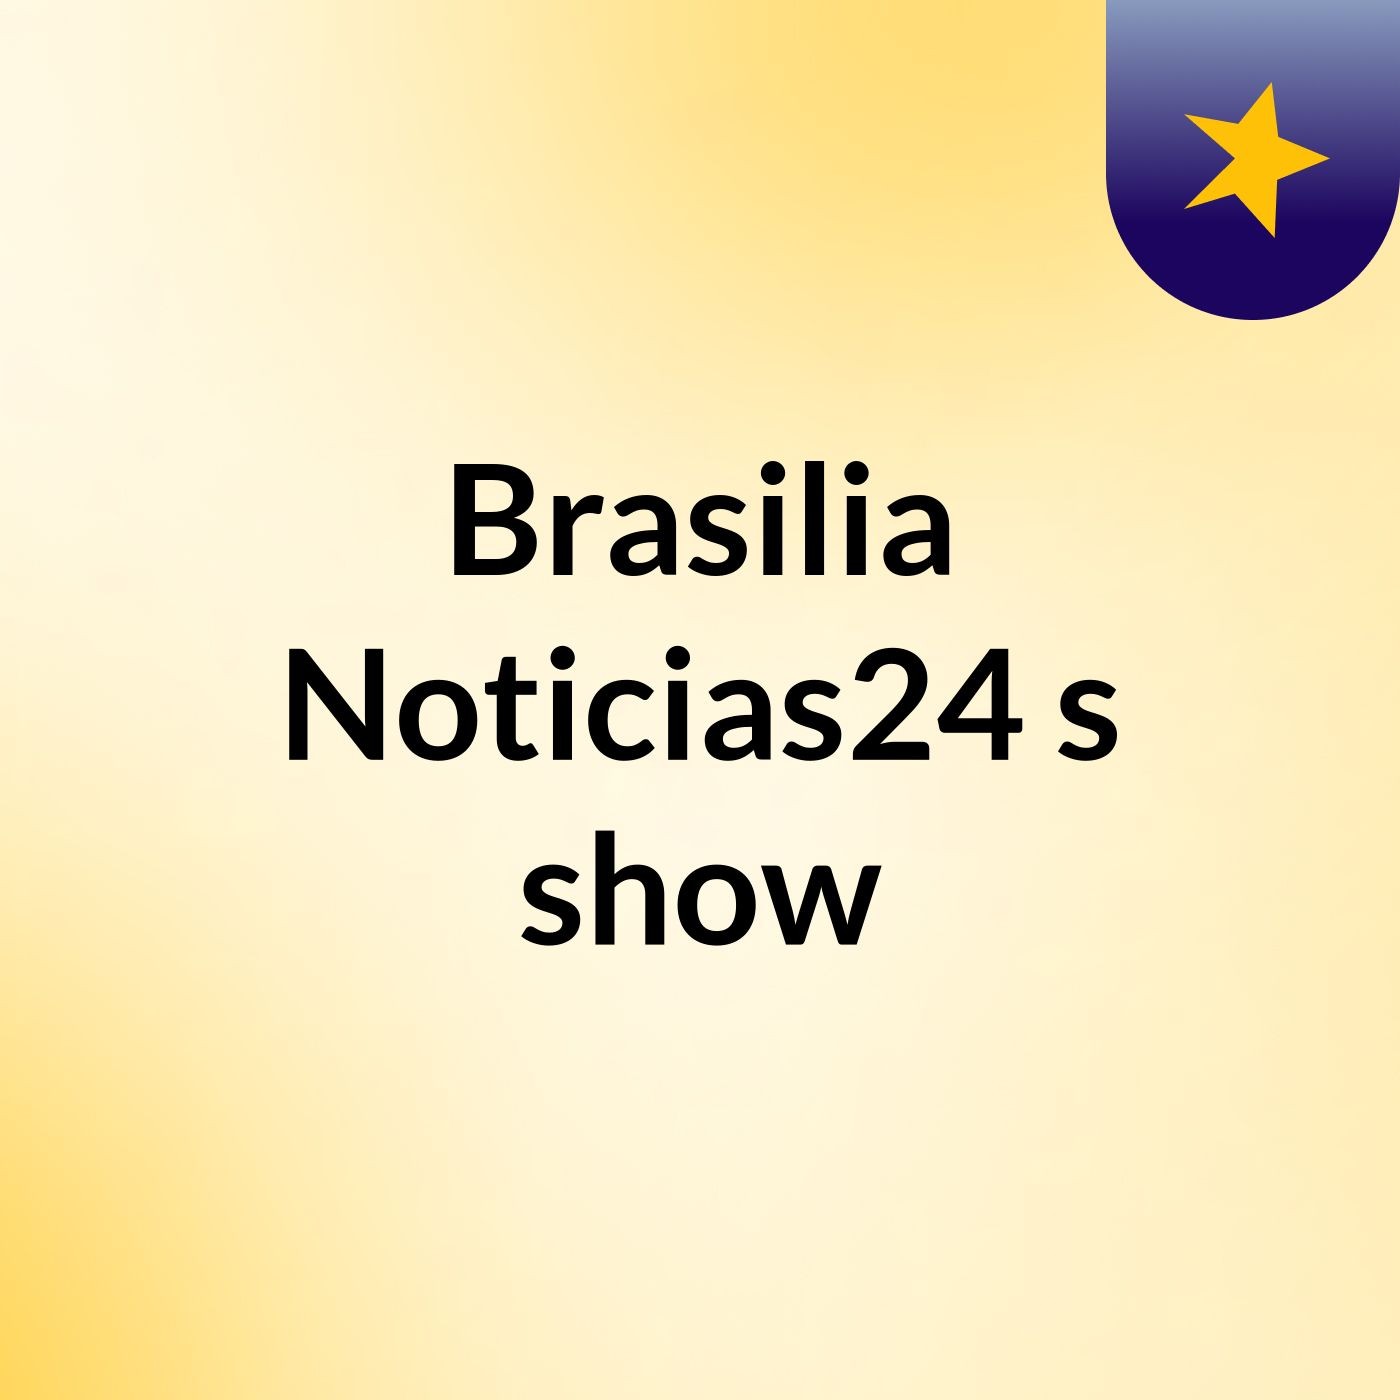 Brasilia Noticias24's show